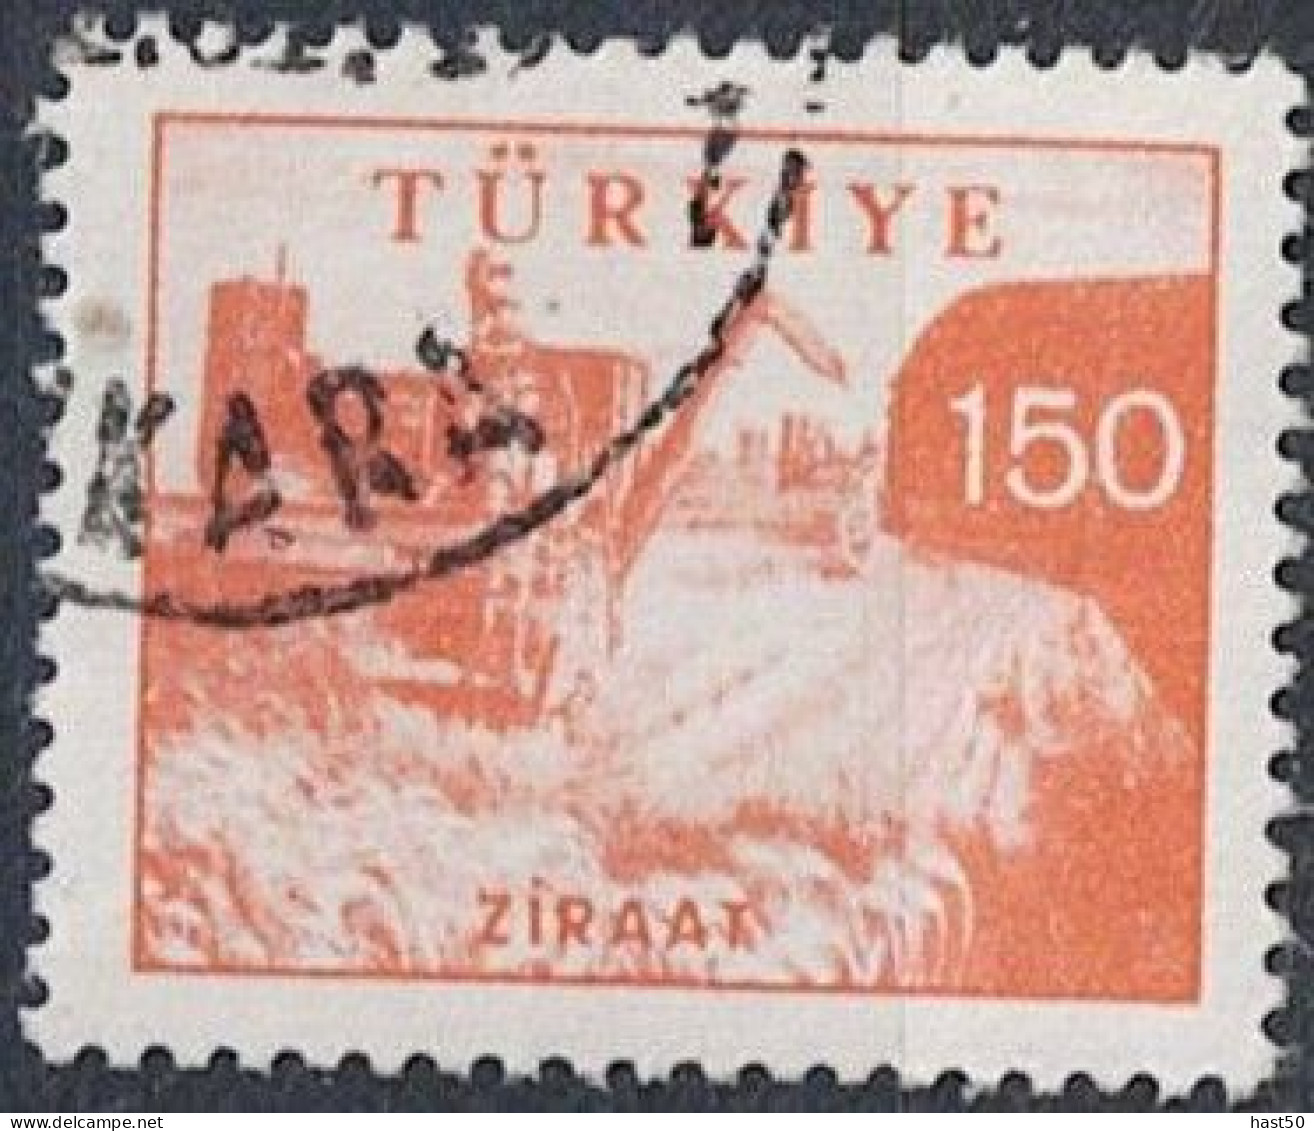 Türkei Turkey Turquie - Mähdrescher (MiNr: 1706) 1960 - Gest Used Obl - Oblitérés